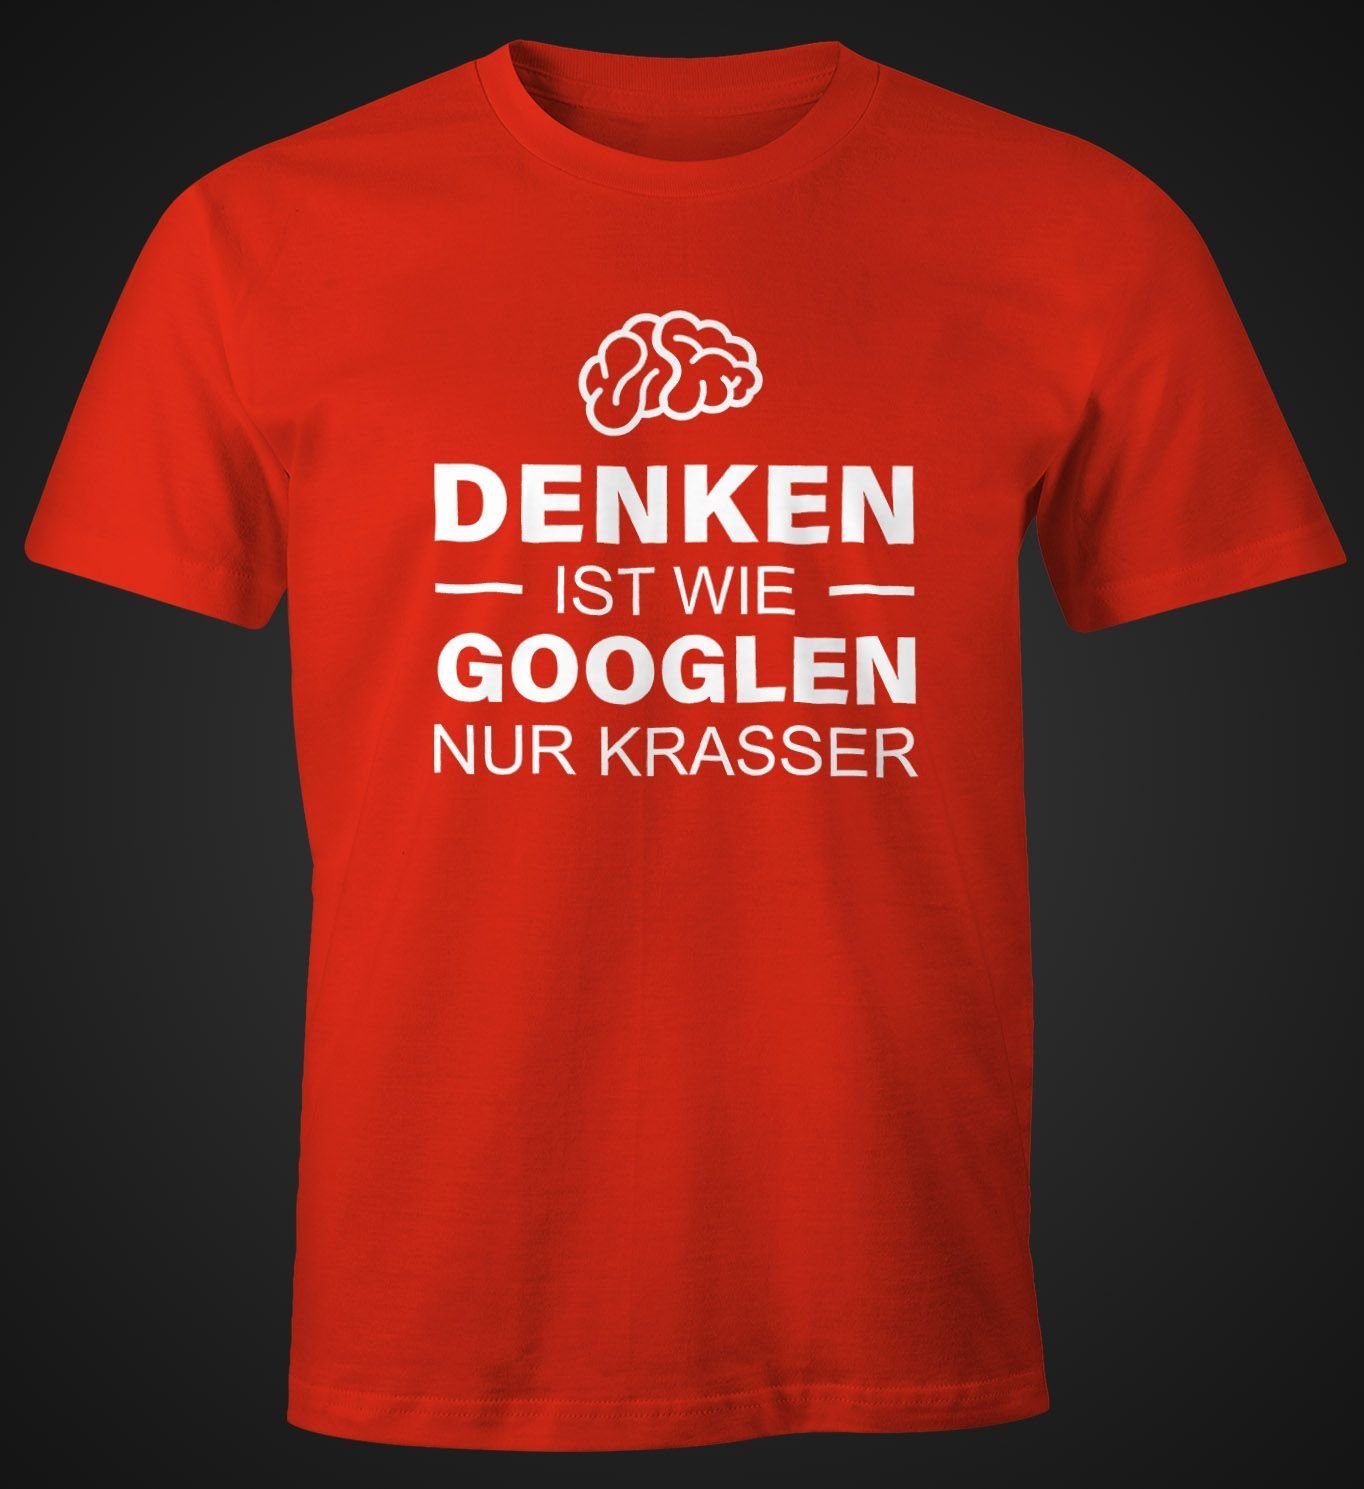 Print-Shirt krasser T-Shirt Fun-Shirt MoonWorks nur Print googeln Herren rot ist mit Denken wie Moonworks®